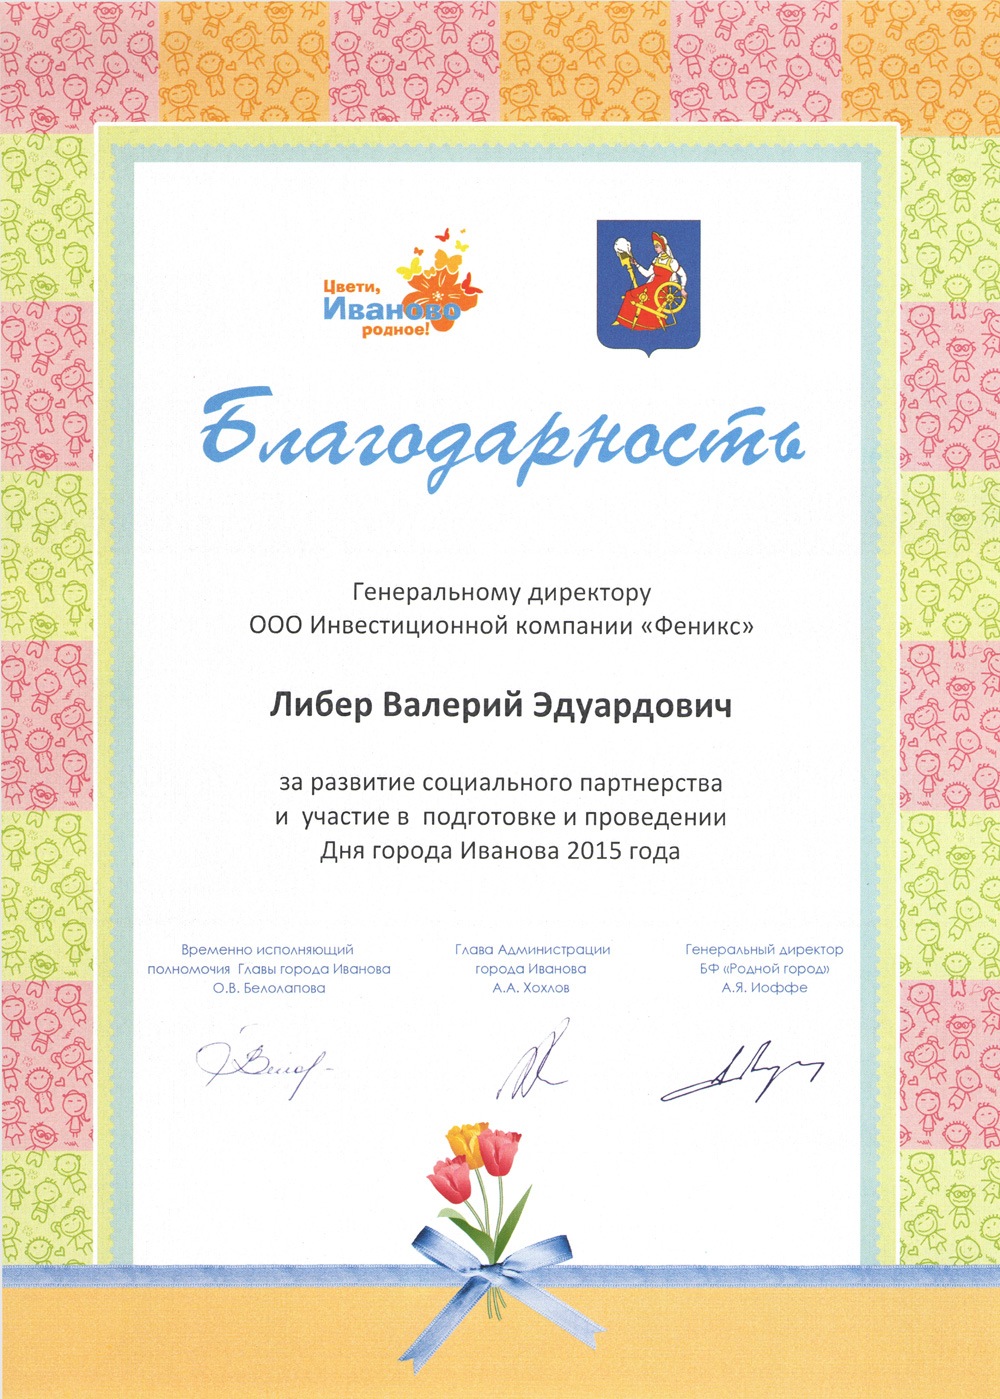 Благодарность за развитие социального партнерства и подготовку, проведение дня города Иваново